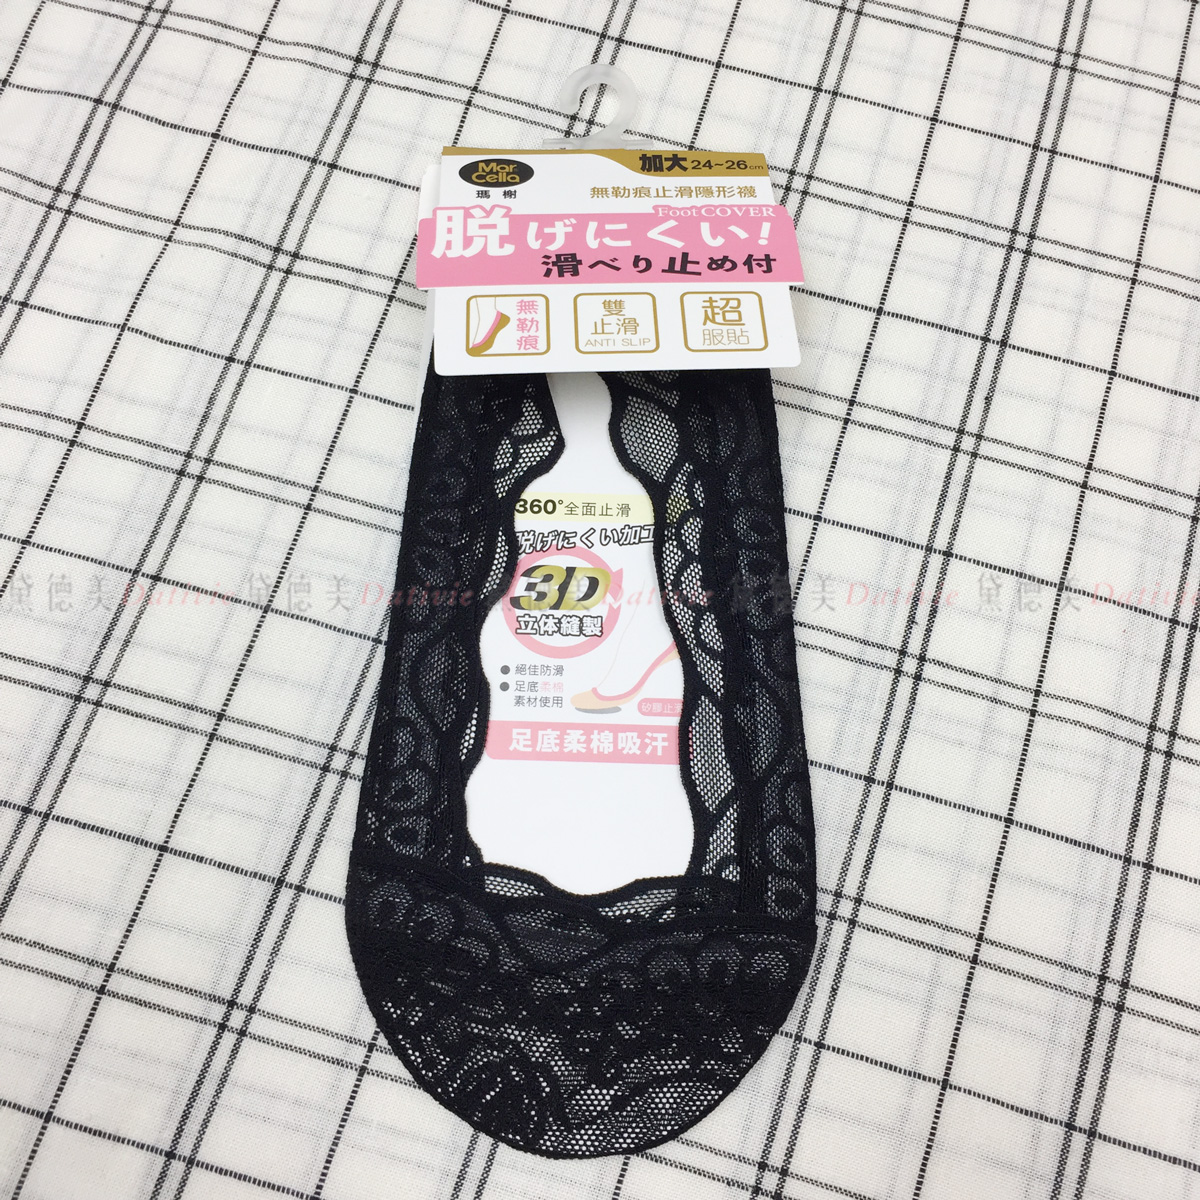 瑪榭 360度防滑蕾絲隱形襪 加大24~26cm 黑色